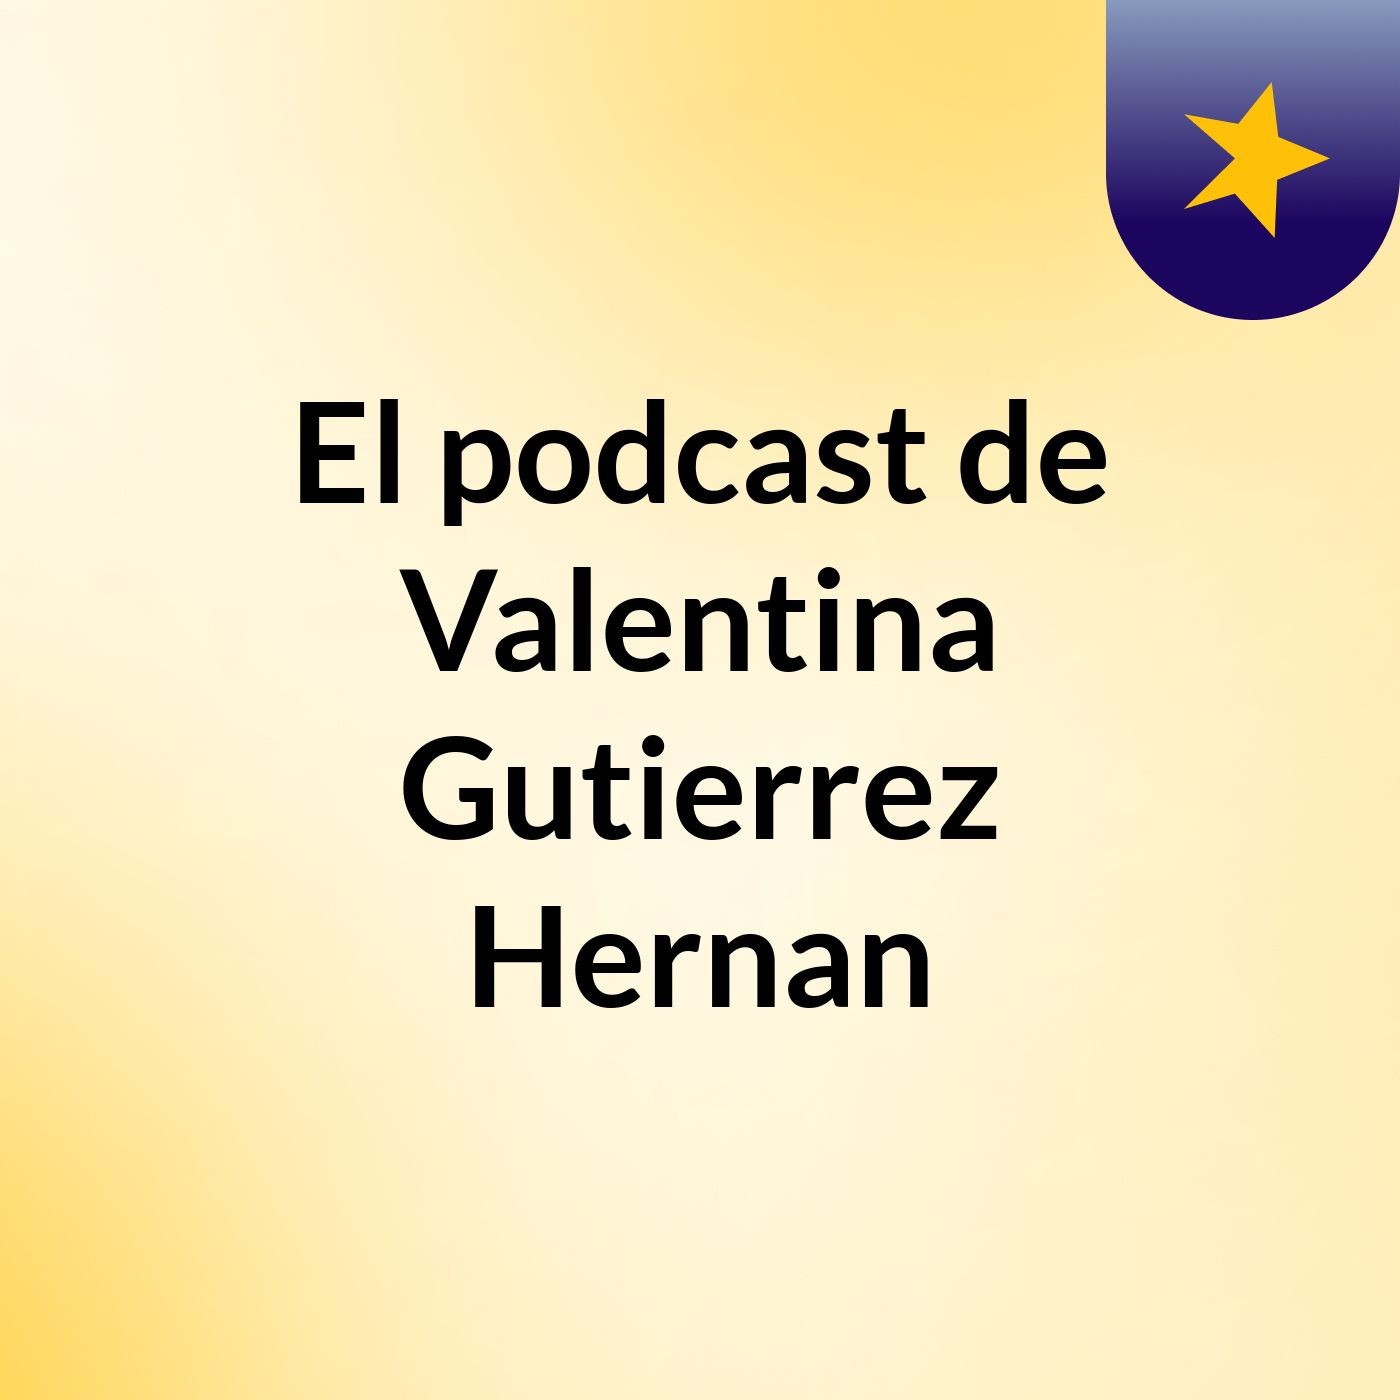 Episodio 12 - El podcast de Valentina Gutierrez Hernan